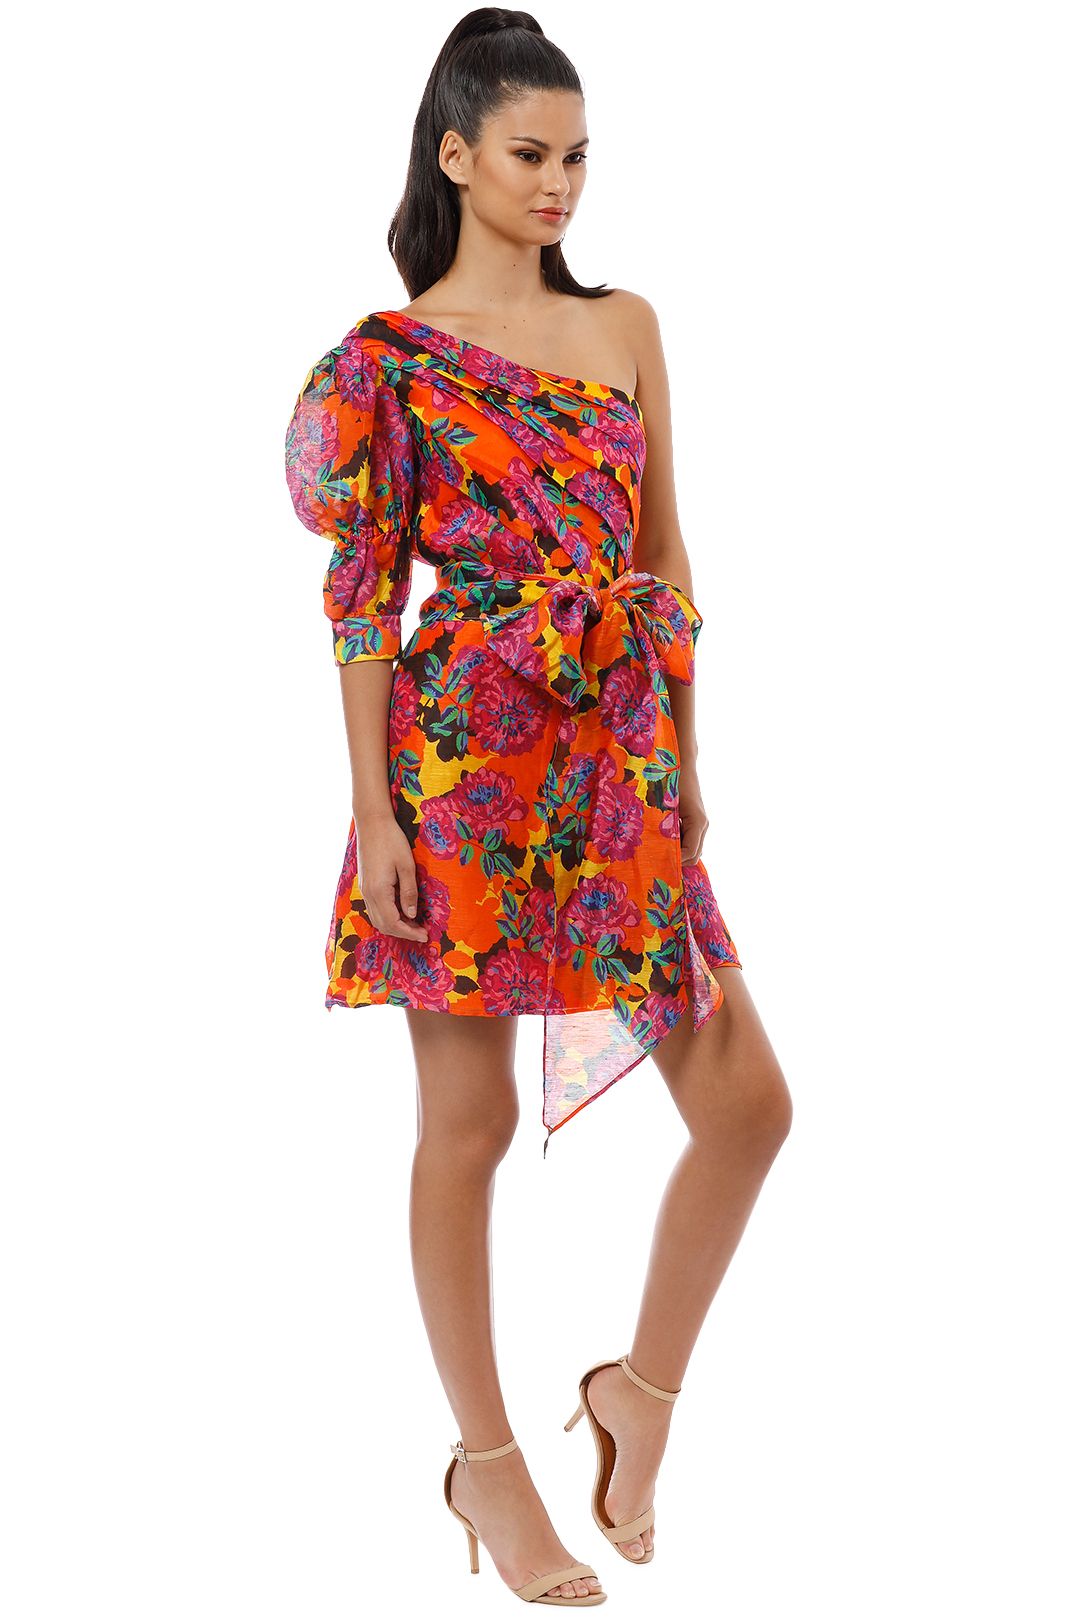 buy floral dresses online